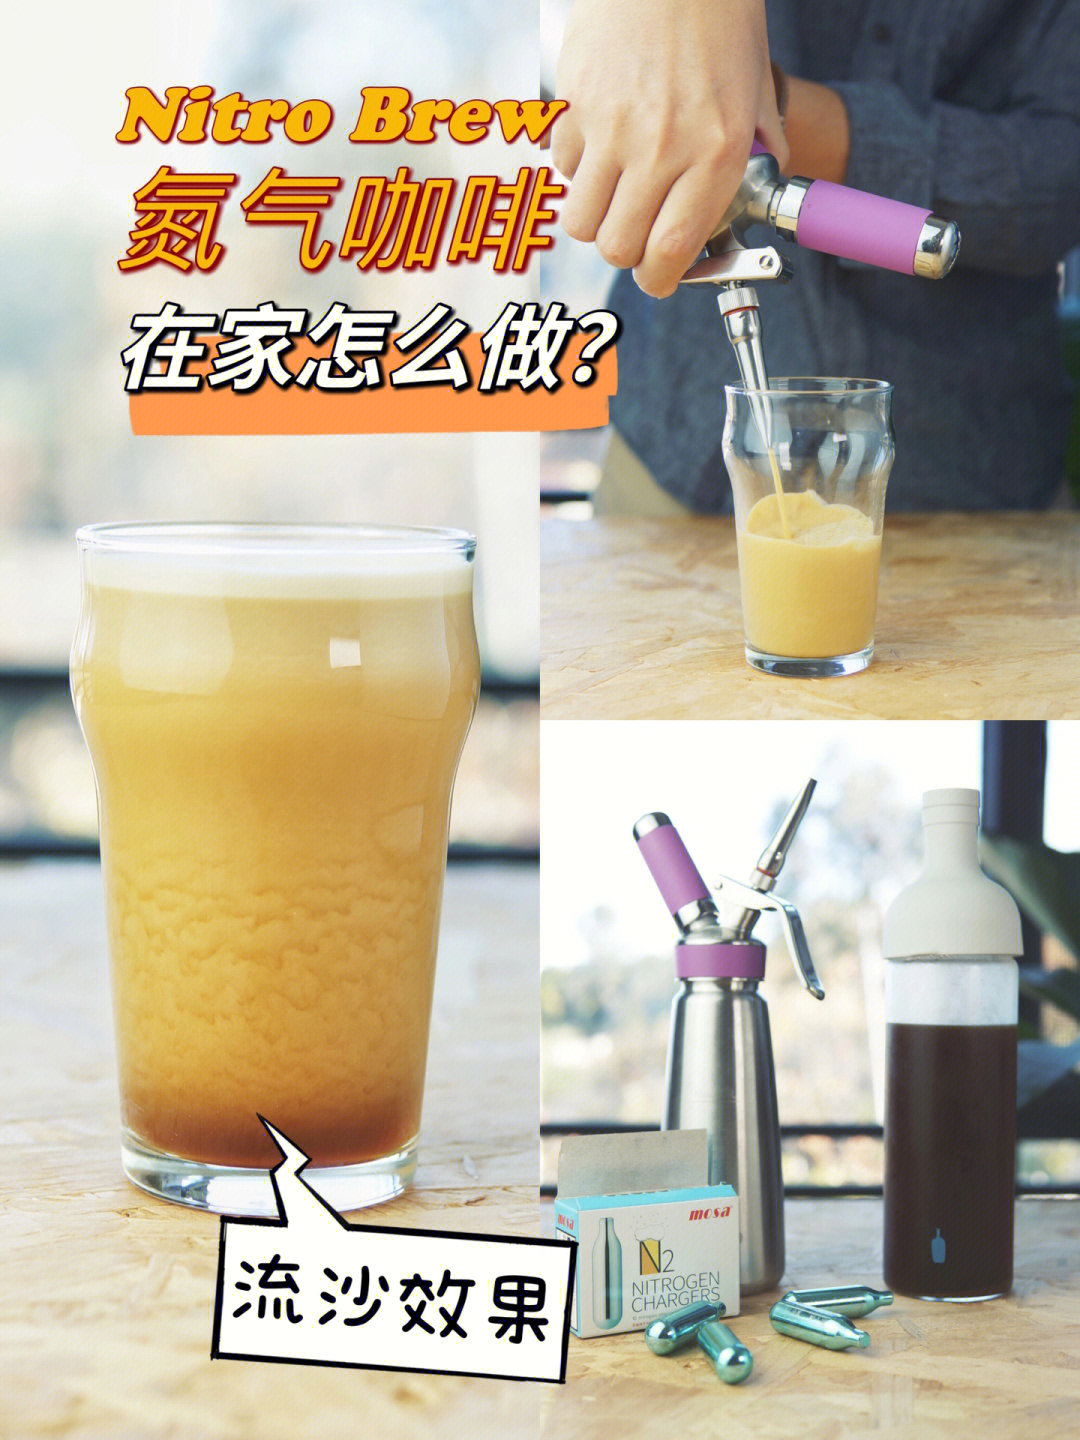 【设备&材料】:① 氮气咖啡发泡腔/奶油腔(注意如果是奶油腔的话裱花